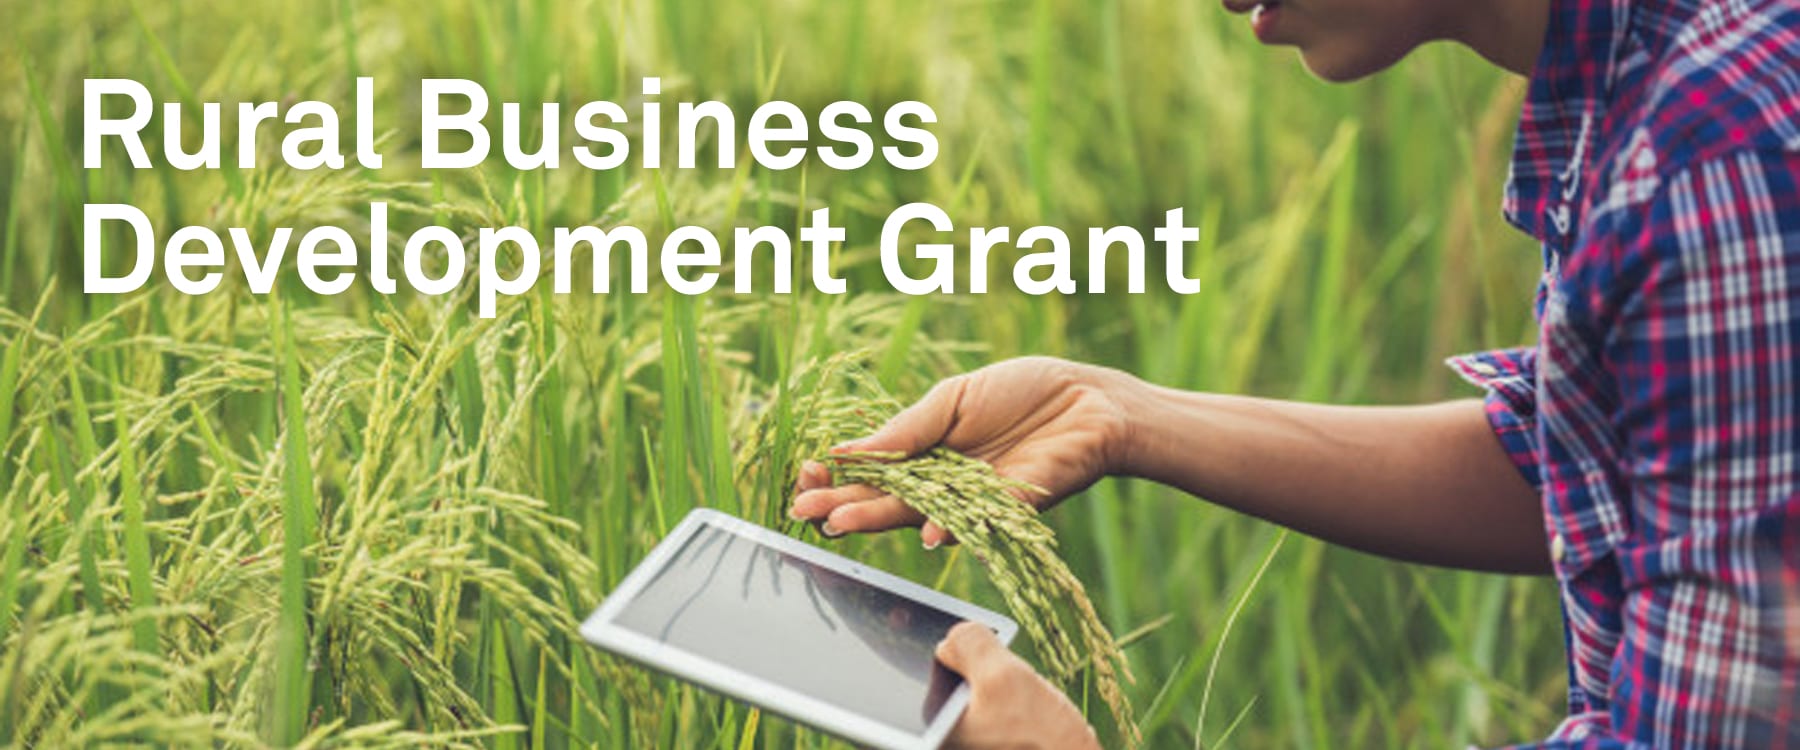 £1million Rural Business Development Grant Scheme offering 50% funding towards E-Commerce Websites Image